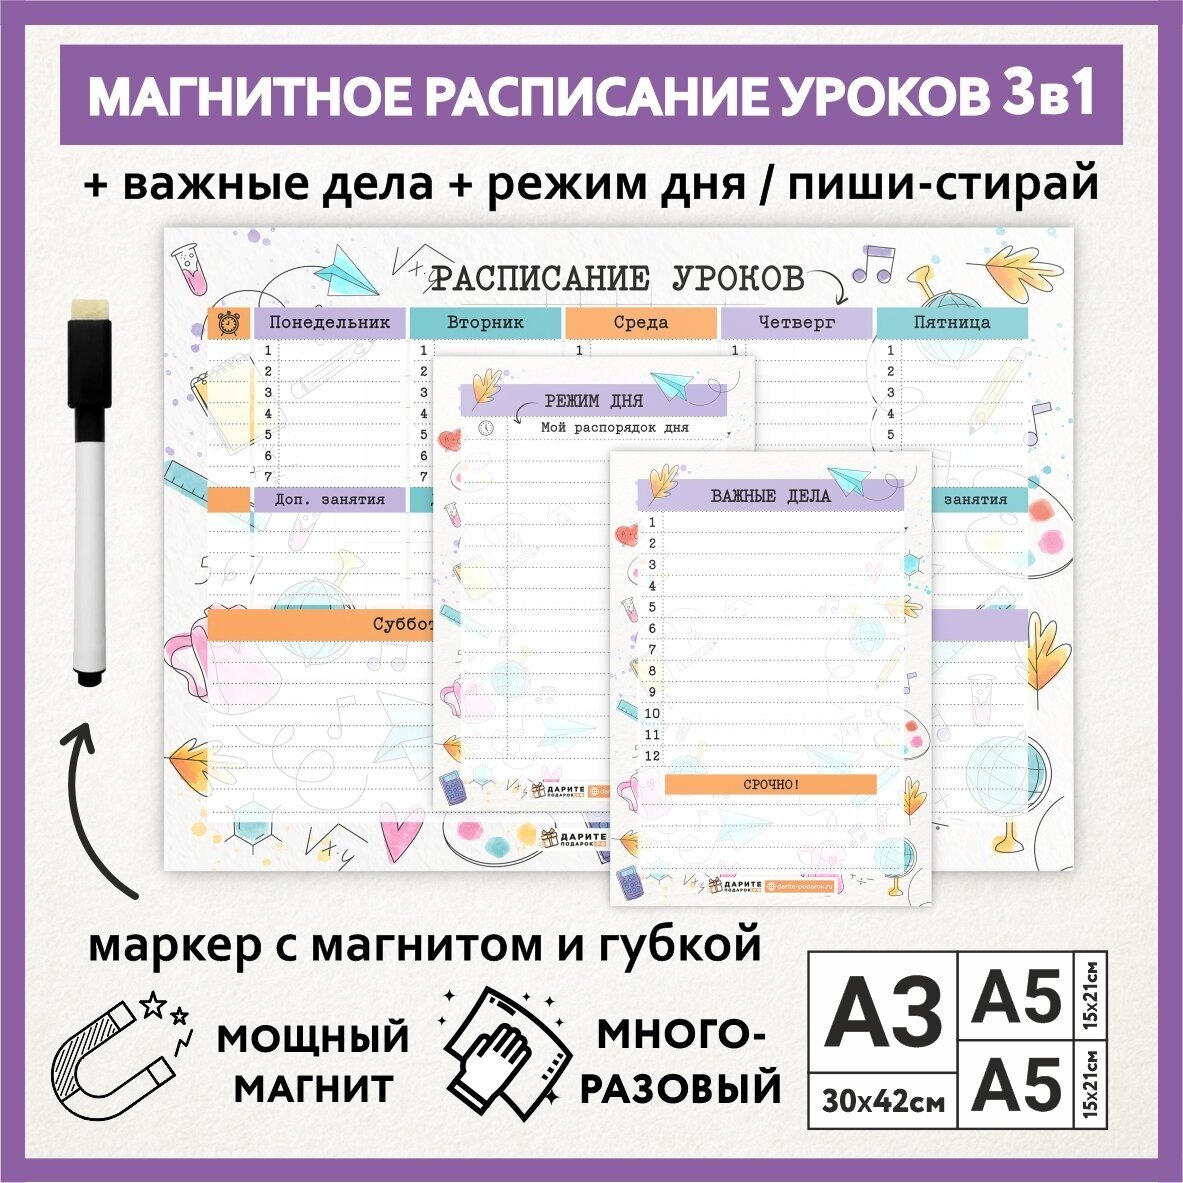 Расписание уроков магнитное 3в1: А3 - на неделю, А5 - режим дня, А5 - важные дела / пиши-стирай школьное / schedule_watercolor_#000_А3, A5x2_3.2